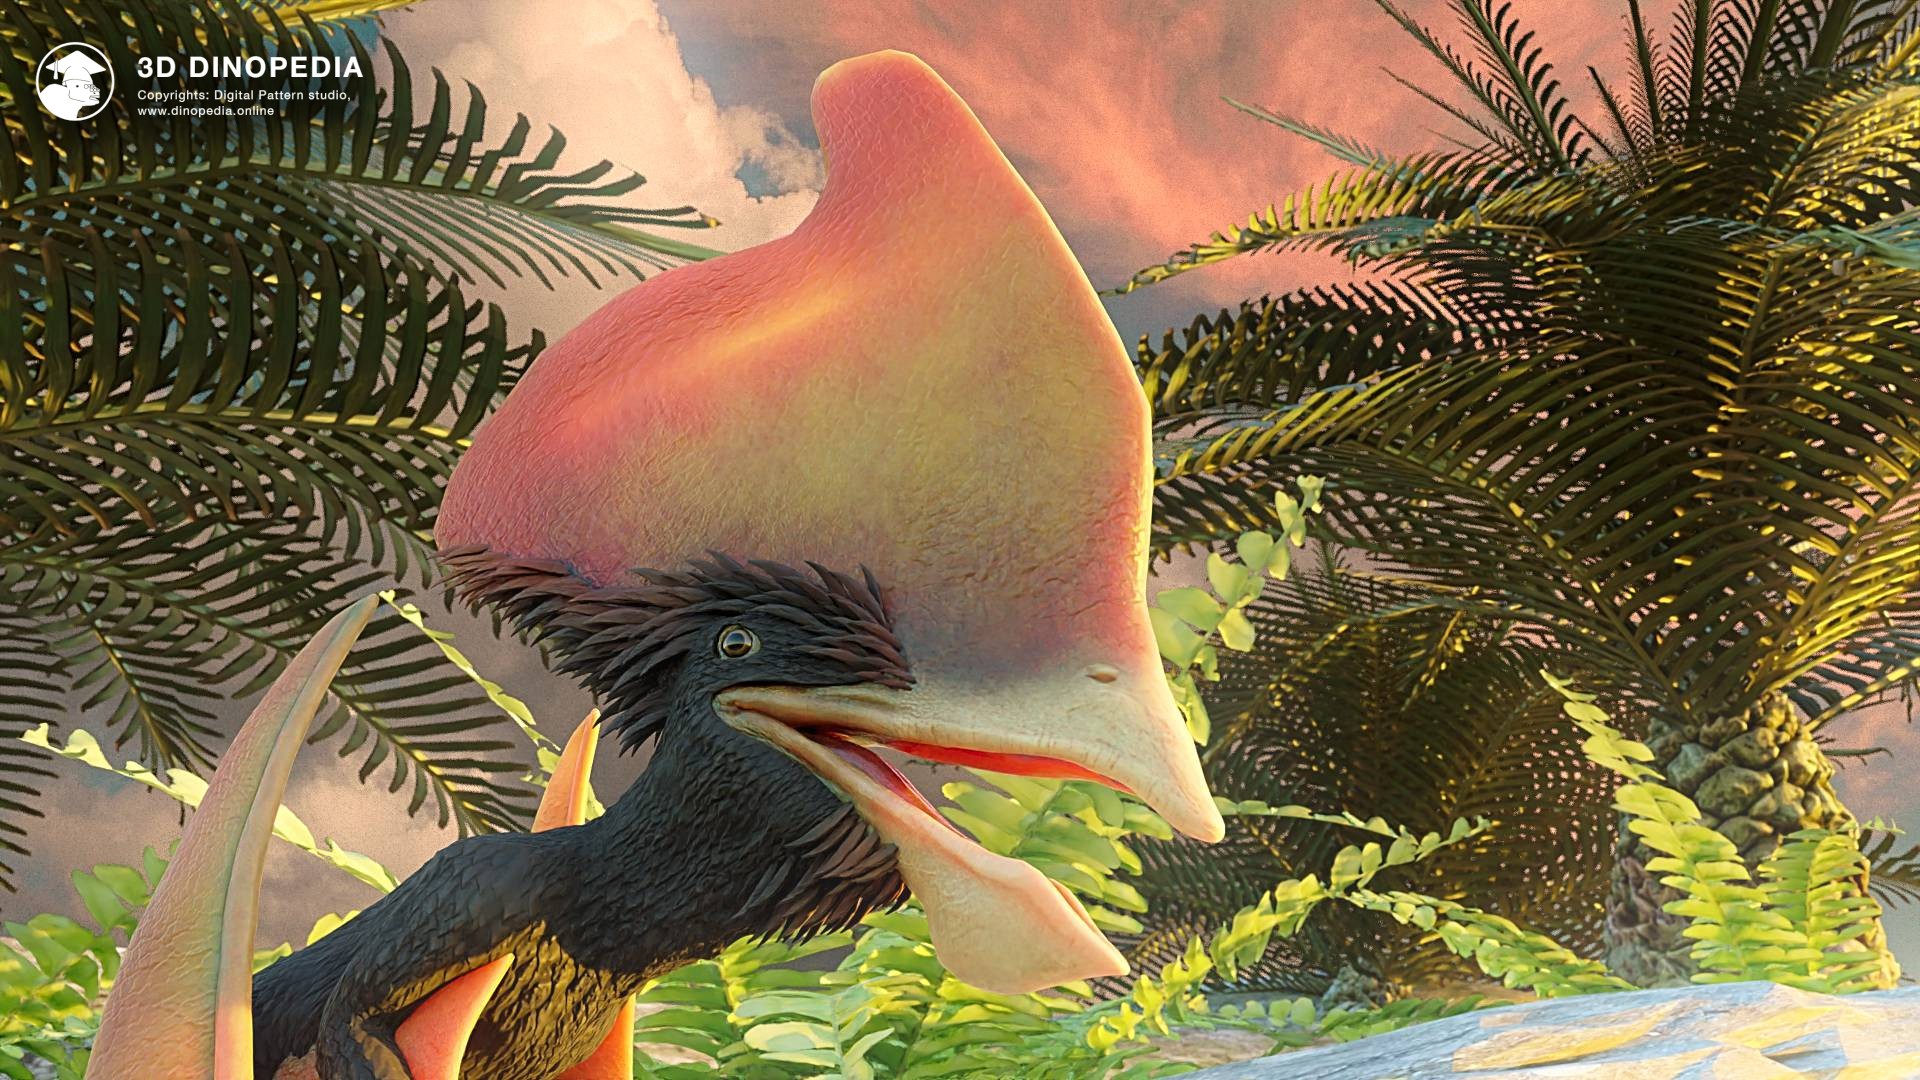 3D Dinopedia Pterosaurs - Mesozoic trendsetters